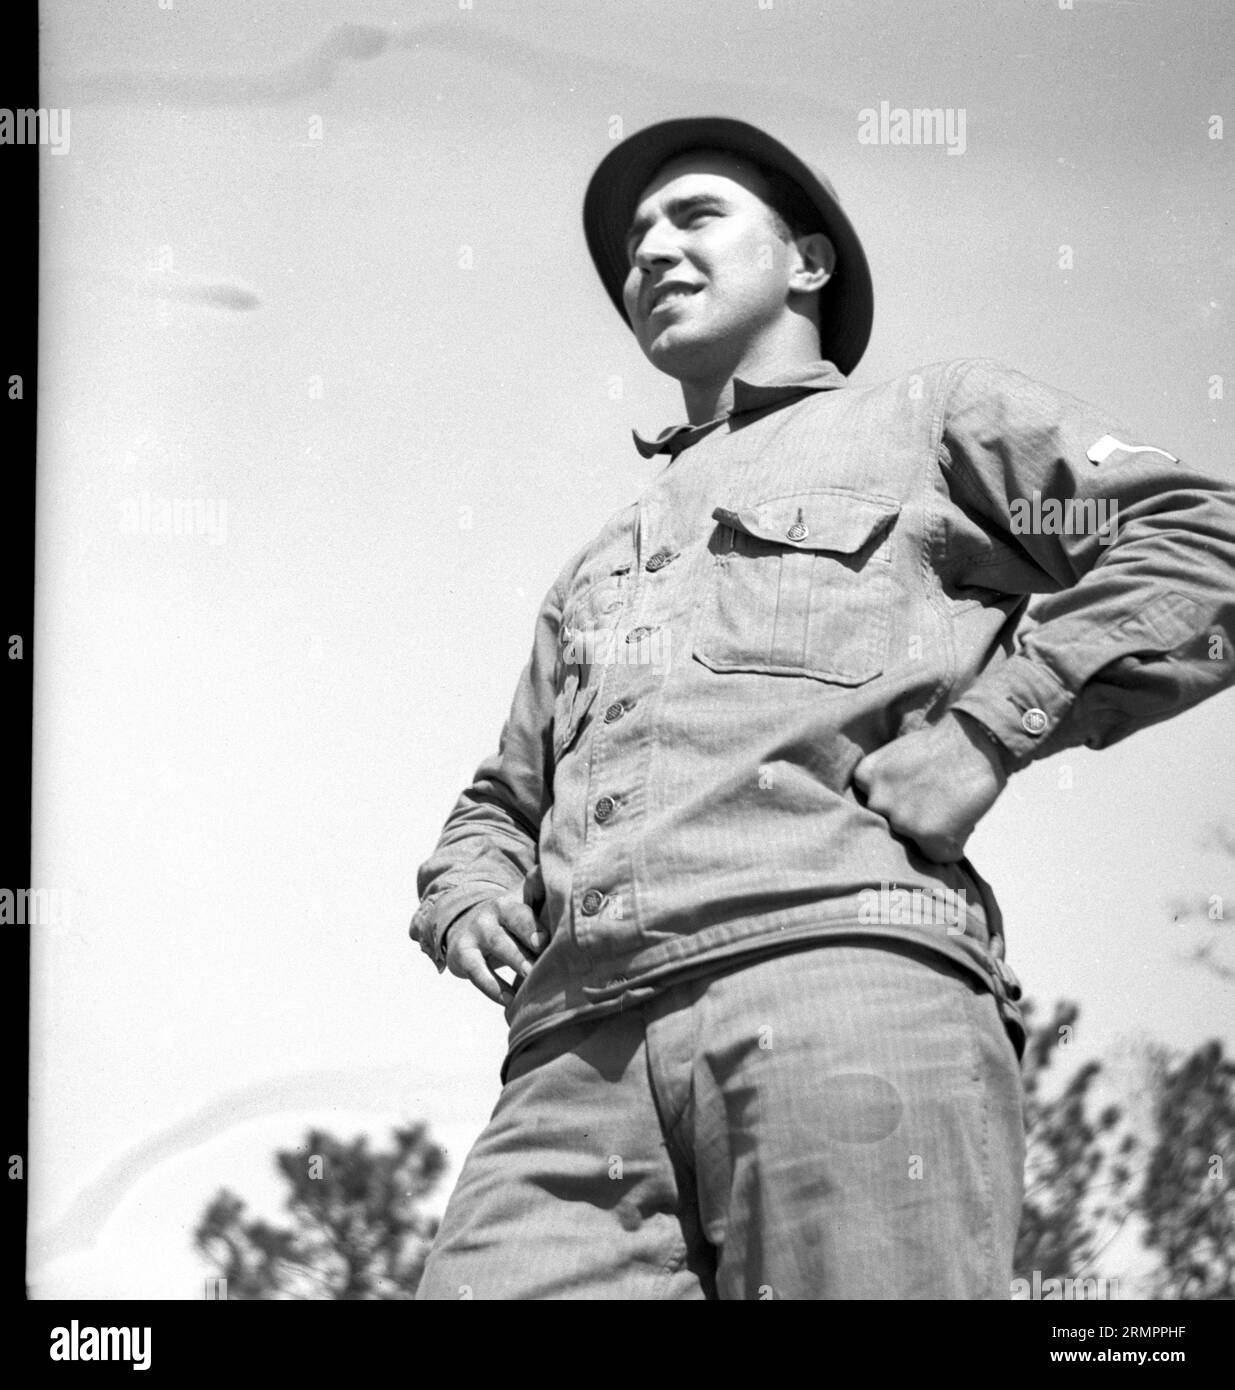 Gi degli Stati Uniti in uniforme. I membri della 114a divisione di fanteria dell'esercito degli Stati Uniti si addestrano a combattere contro la Germania in Europa durante la seconda guerra mondiale. Foto Stock